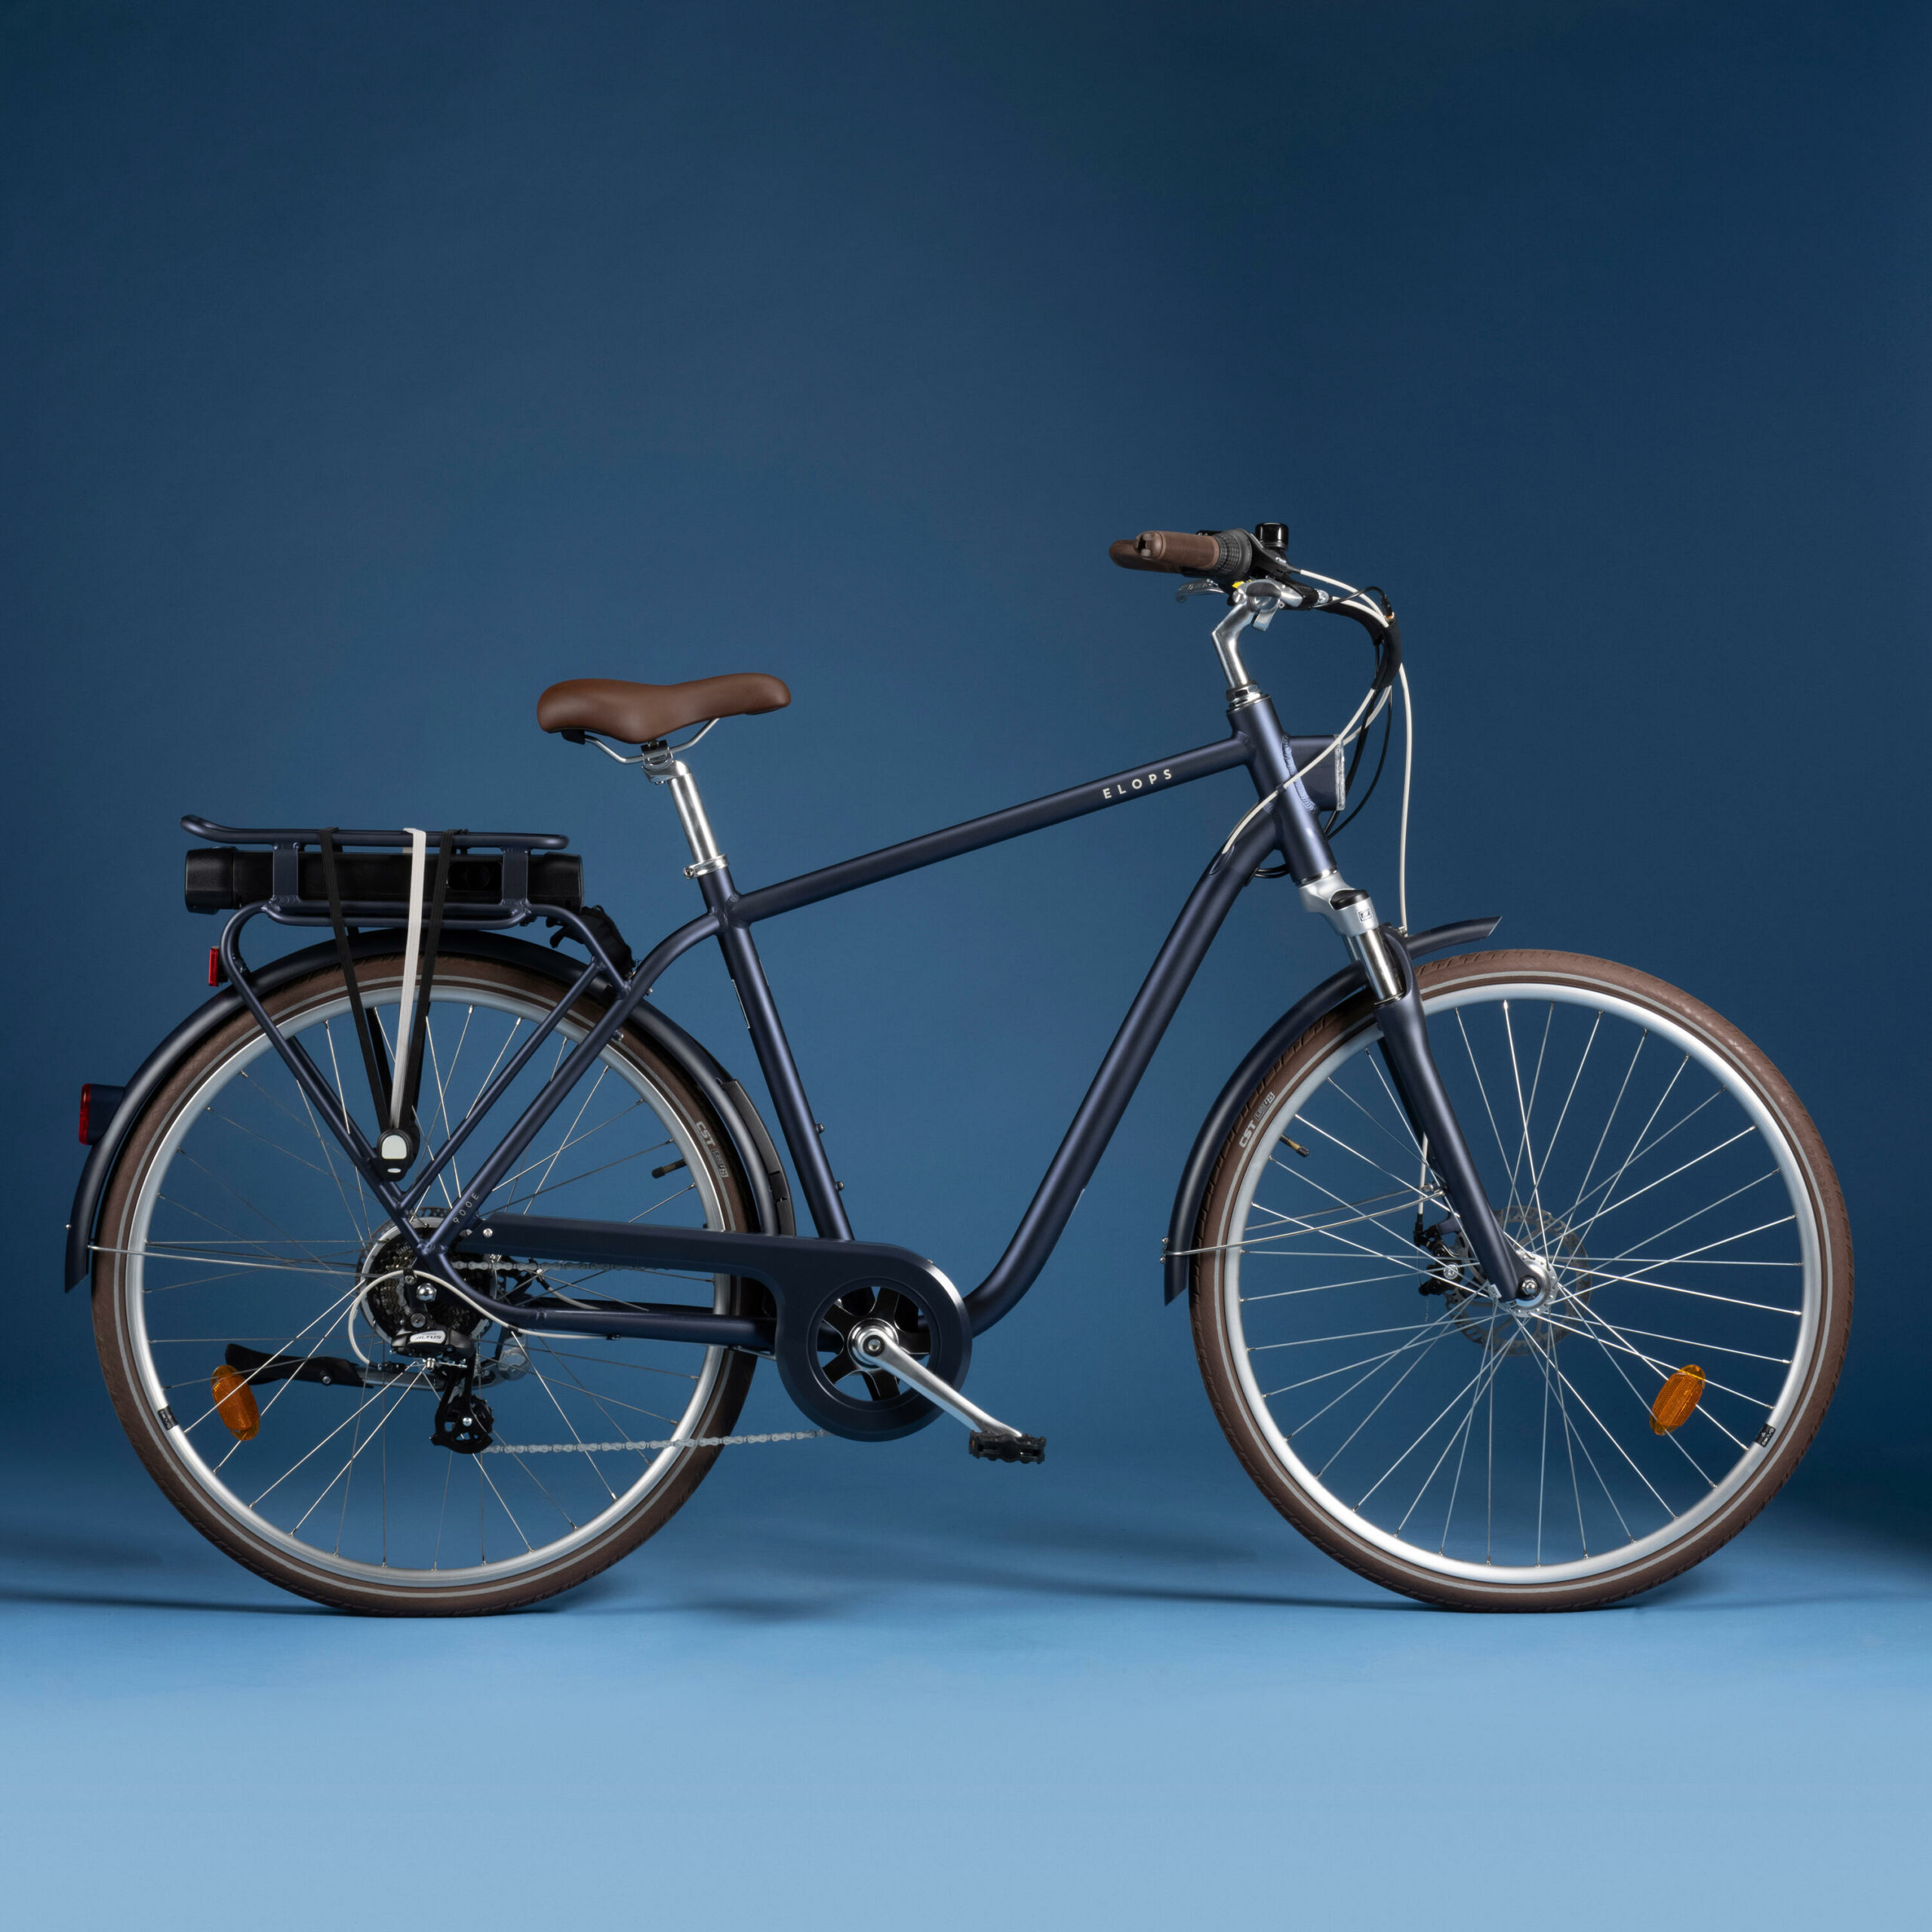 Bon plan – Decathlon passe son vélo électrique de ville Elops 900 sous la barre des 1 000 €